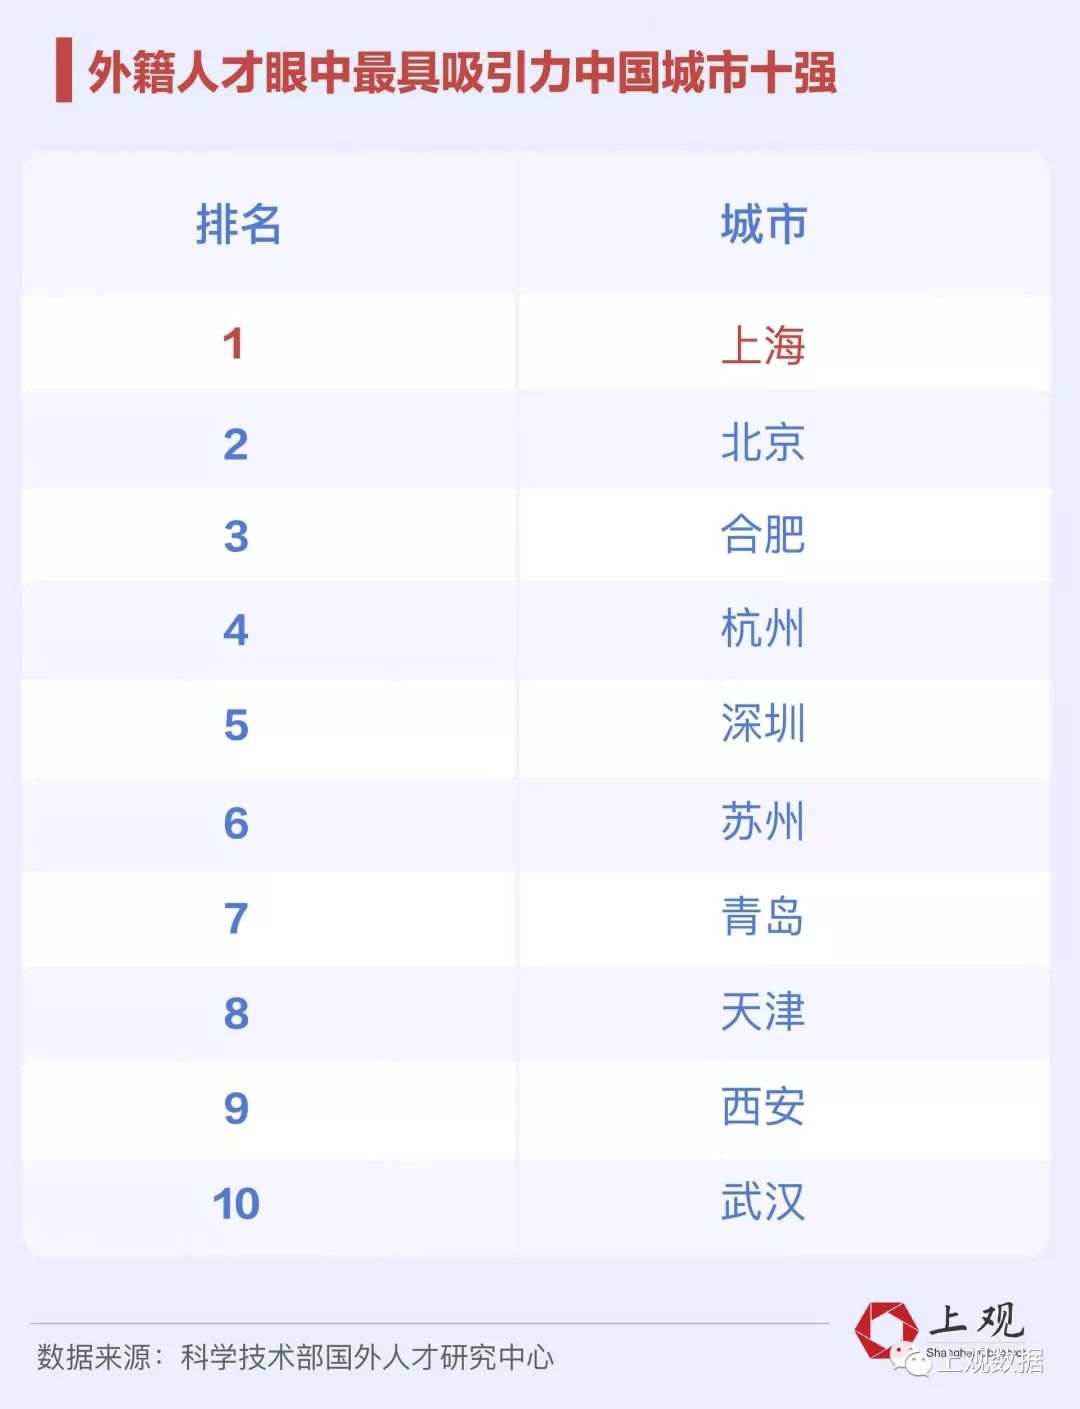 上海、三亚、北京分列中国城市休闲指数排名前三甲